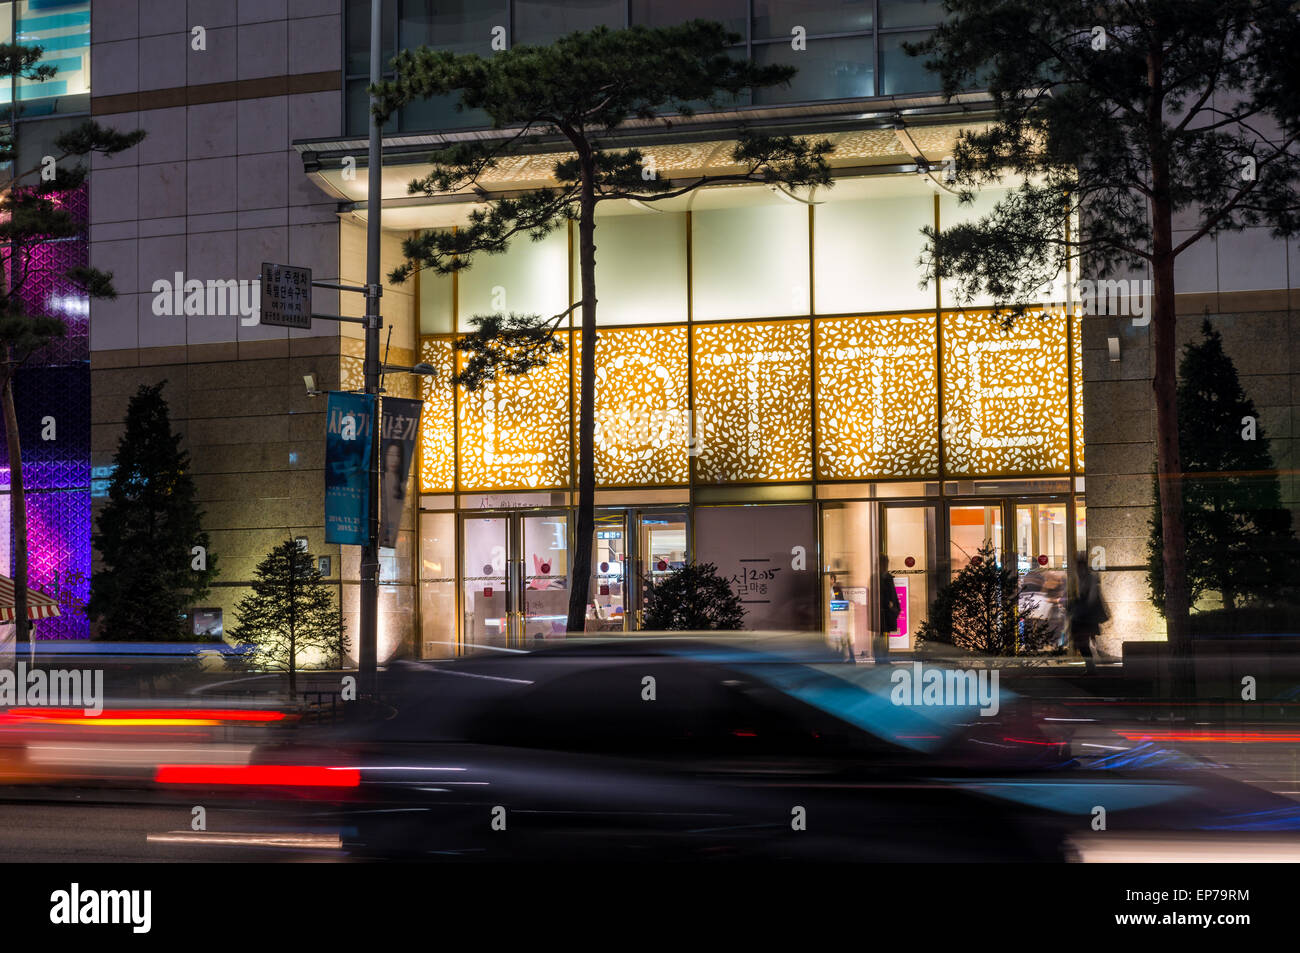 Lotte department store éclairé la nuit dans le quartier Myeongdong de Séoul, Corée du Sud. Banque D'Images